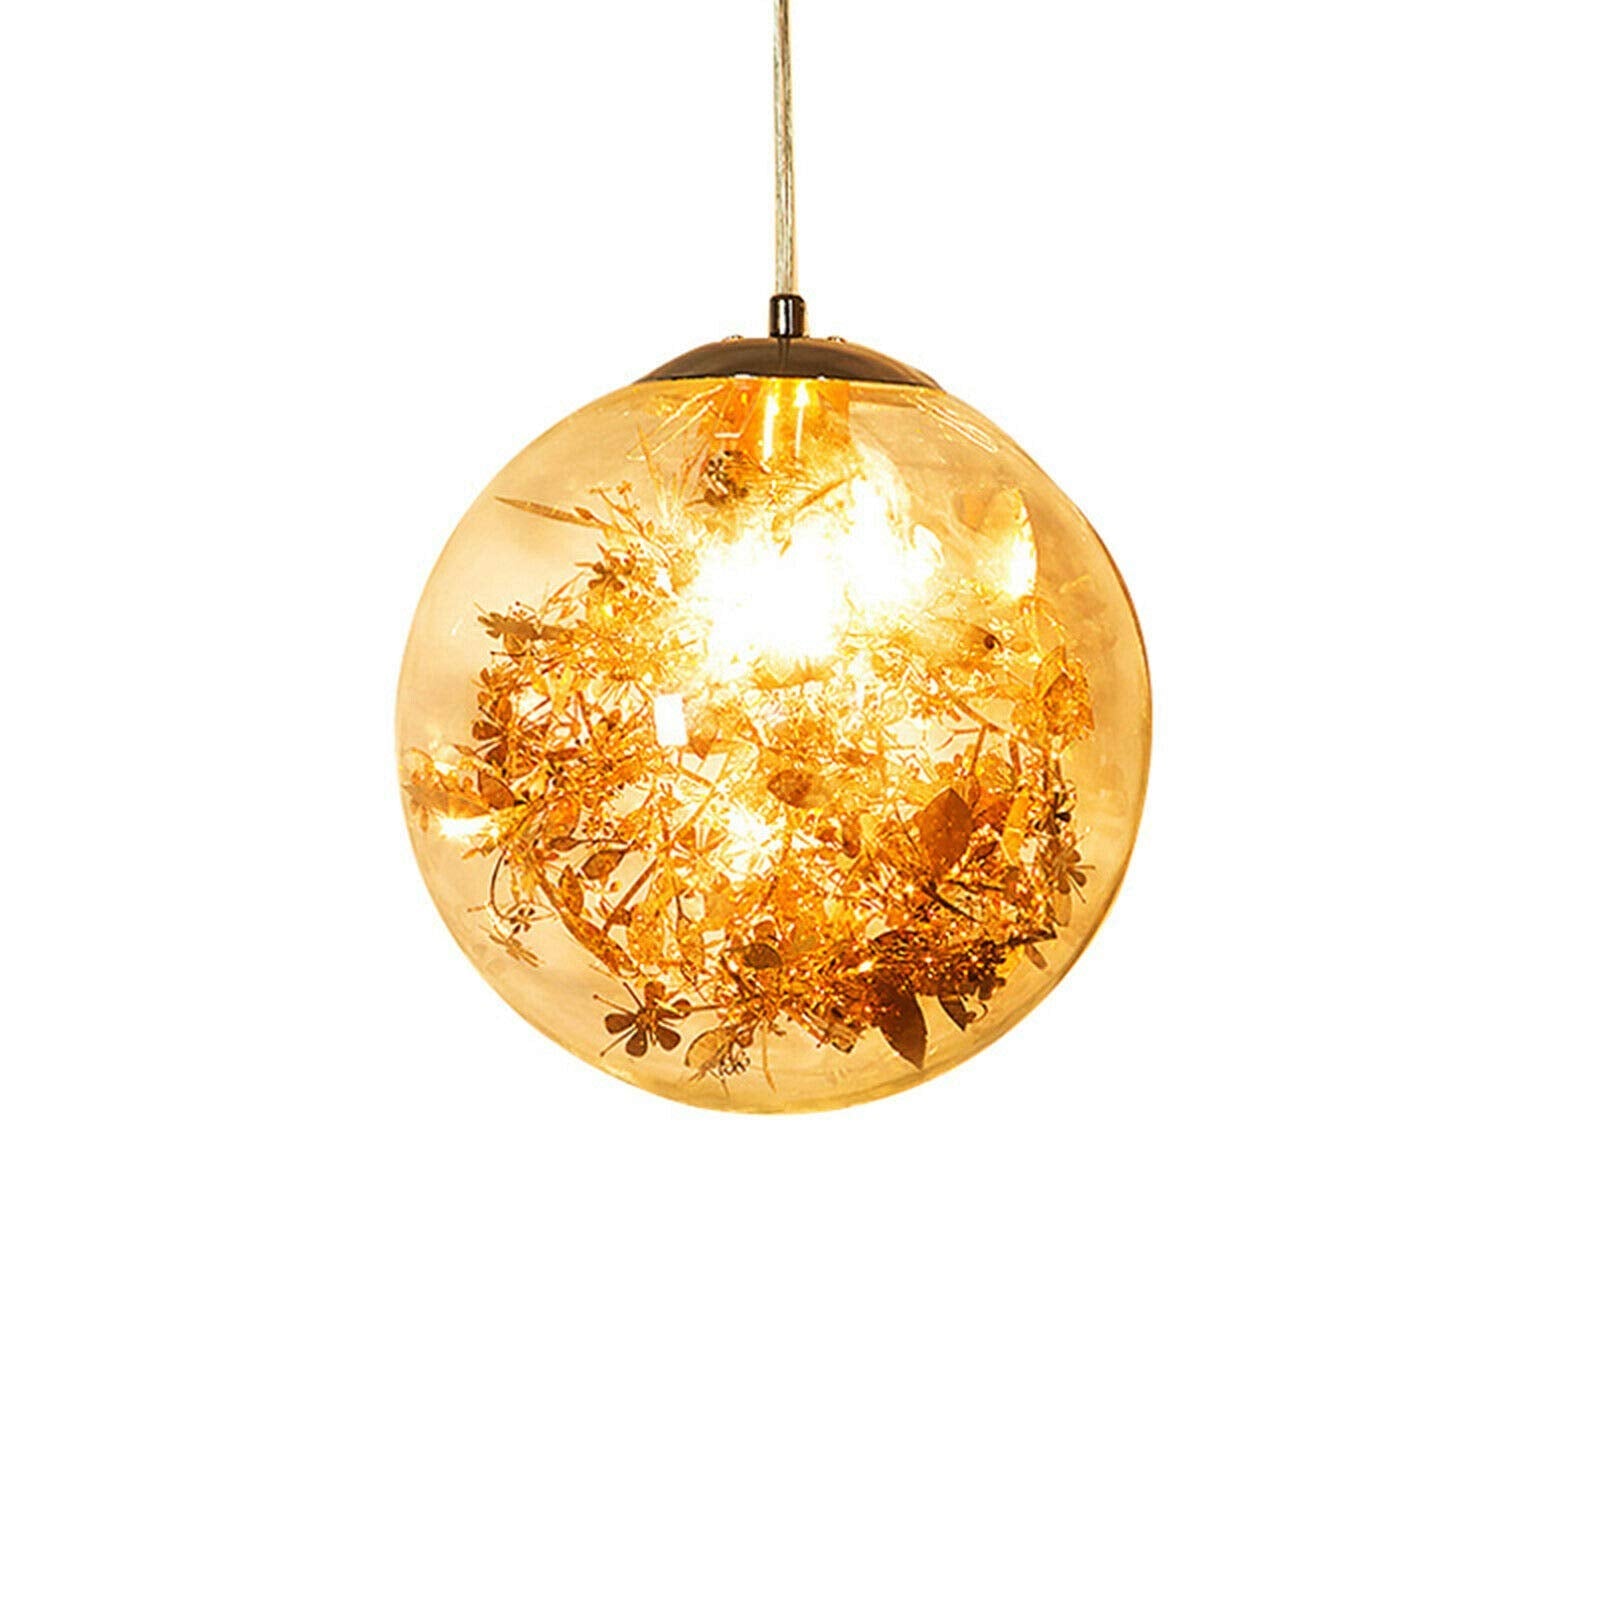 E27 20 cm LED Sfera di vetro Lampadario di design in cristallo creativo Plafoniere Lampada a sospensione moderna Lampada da soffitto